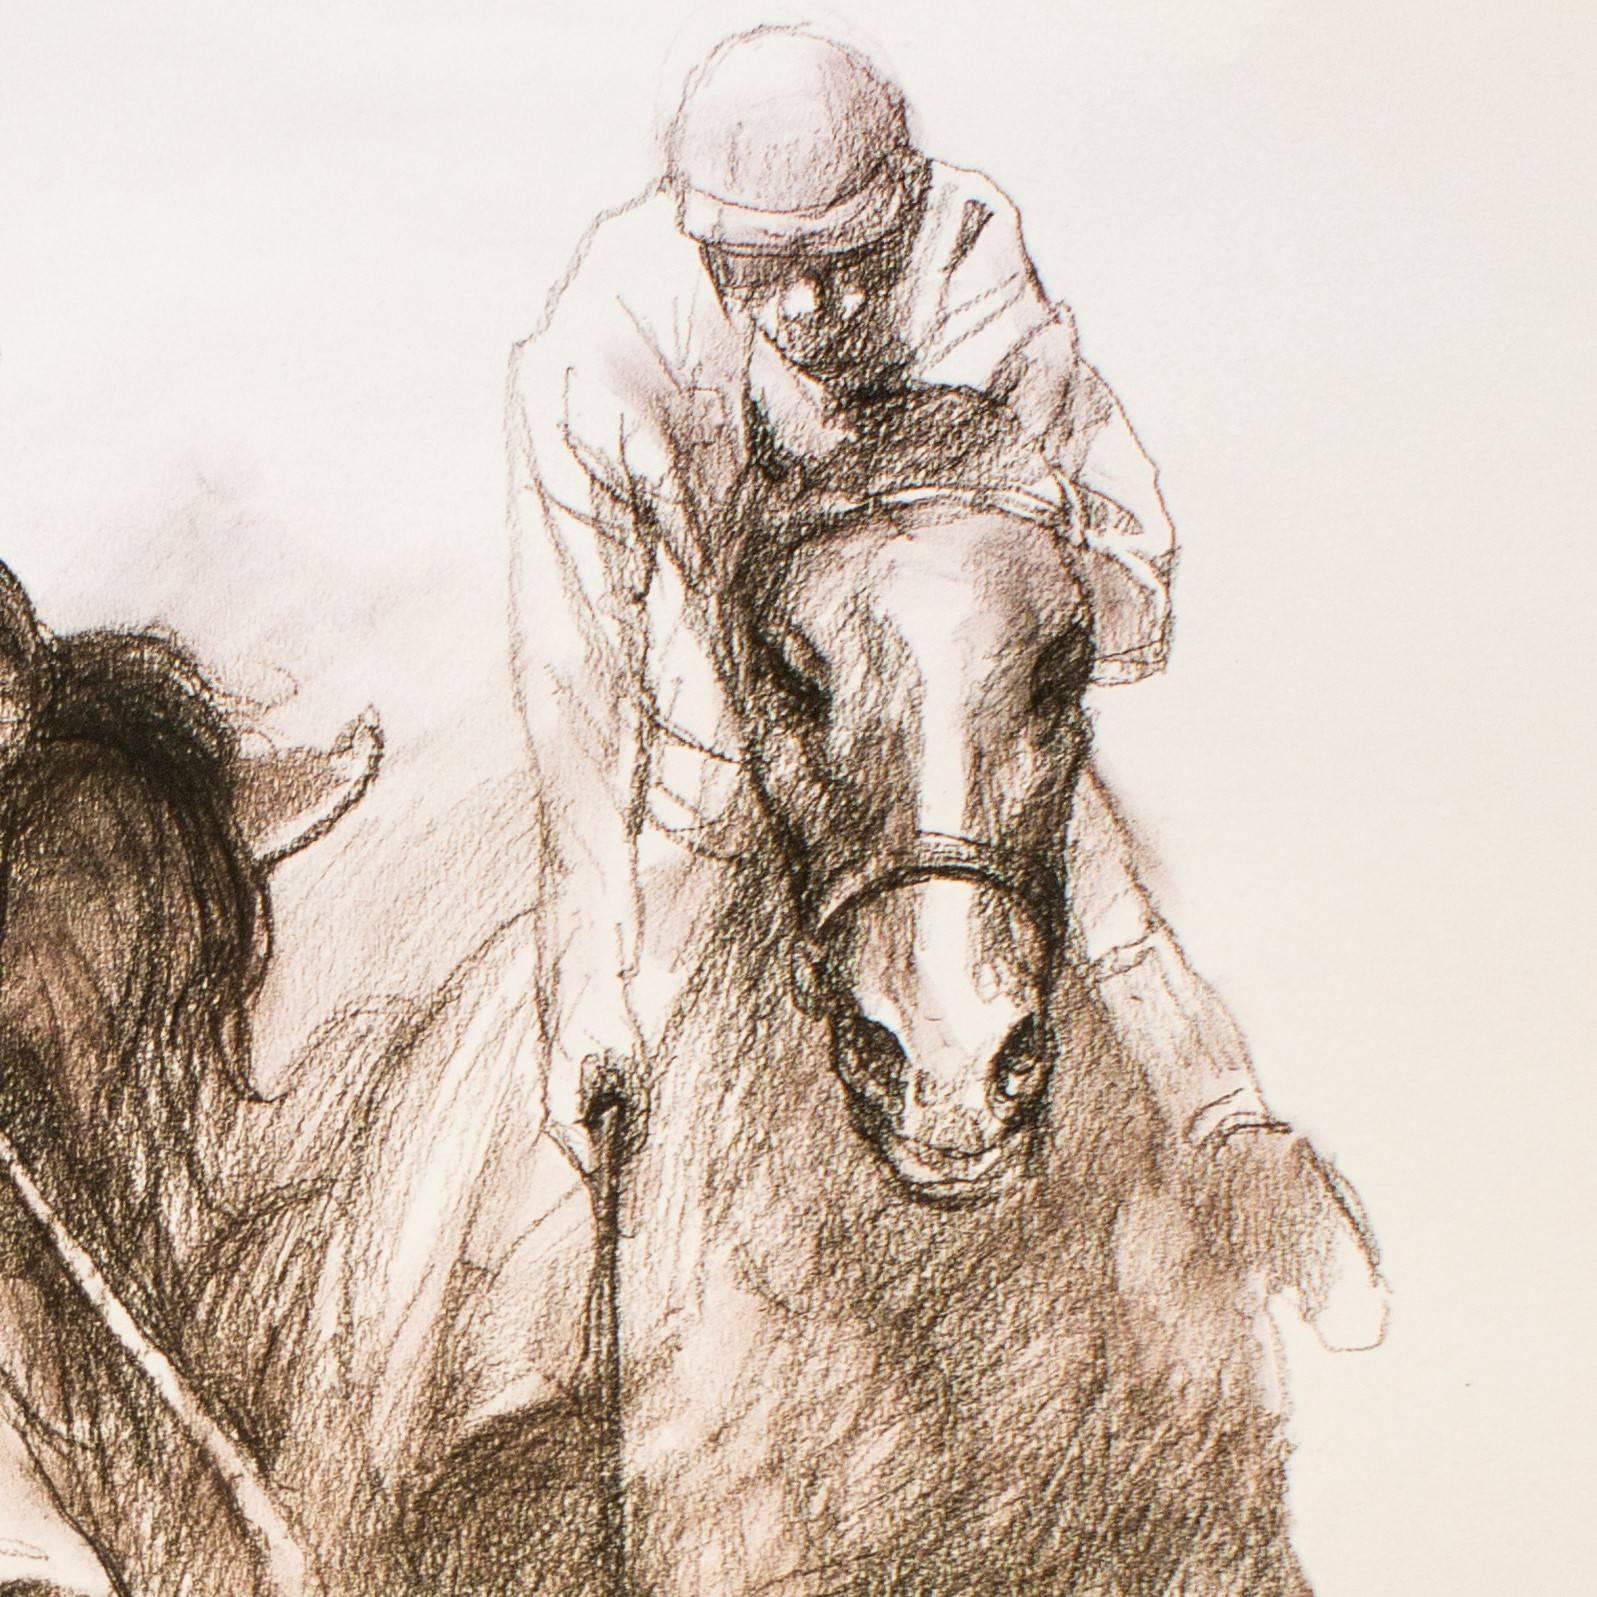 Equestrian, Olympic Games Beijing 2008 - Contemporary Print by Zhou Zhiwei